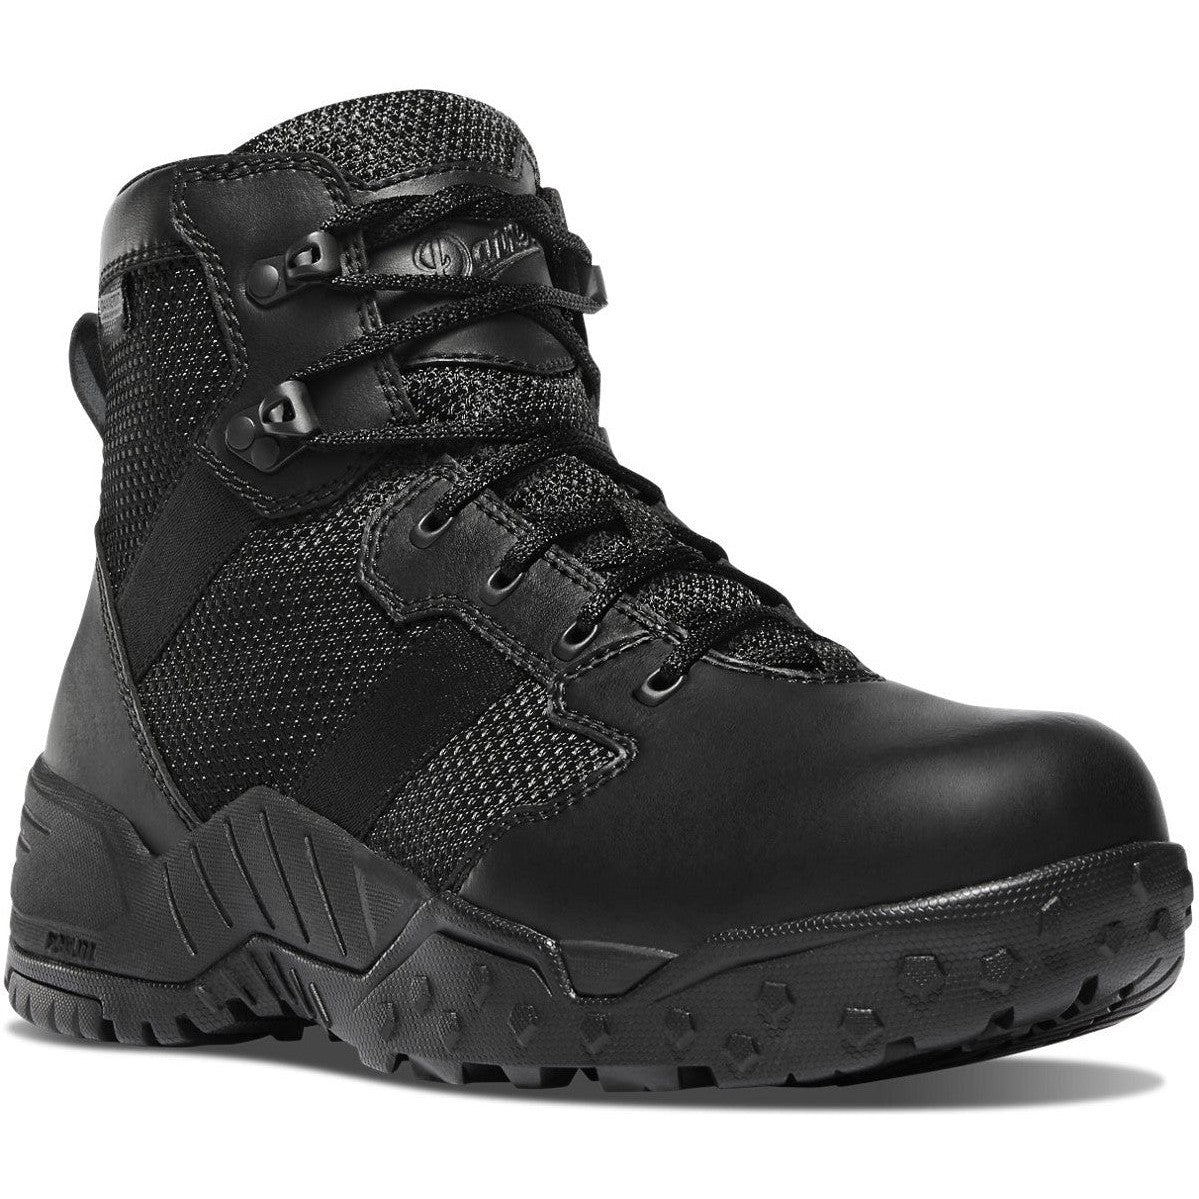 Danner Men's Scorch 6" Waterproof Side Zip Duty Boot -Black- 25731  - Overlook Boots